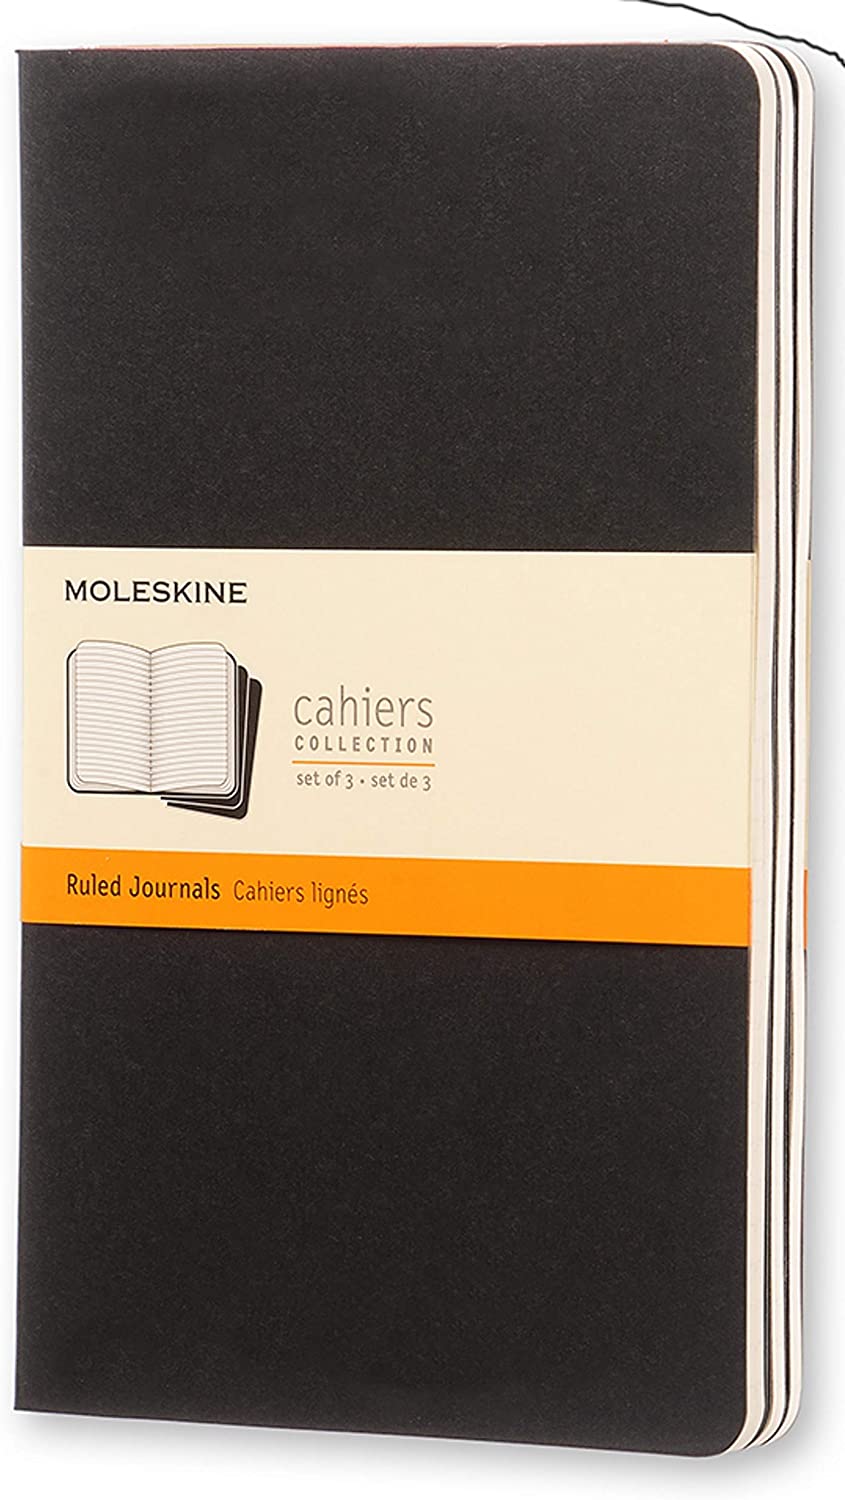 clicca su immagine per consultare dettagli, vedere altre foto e ordinare Moleskine SET 3 TaccuinI Legendary Notebooks: Soft Quadri